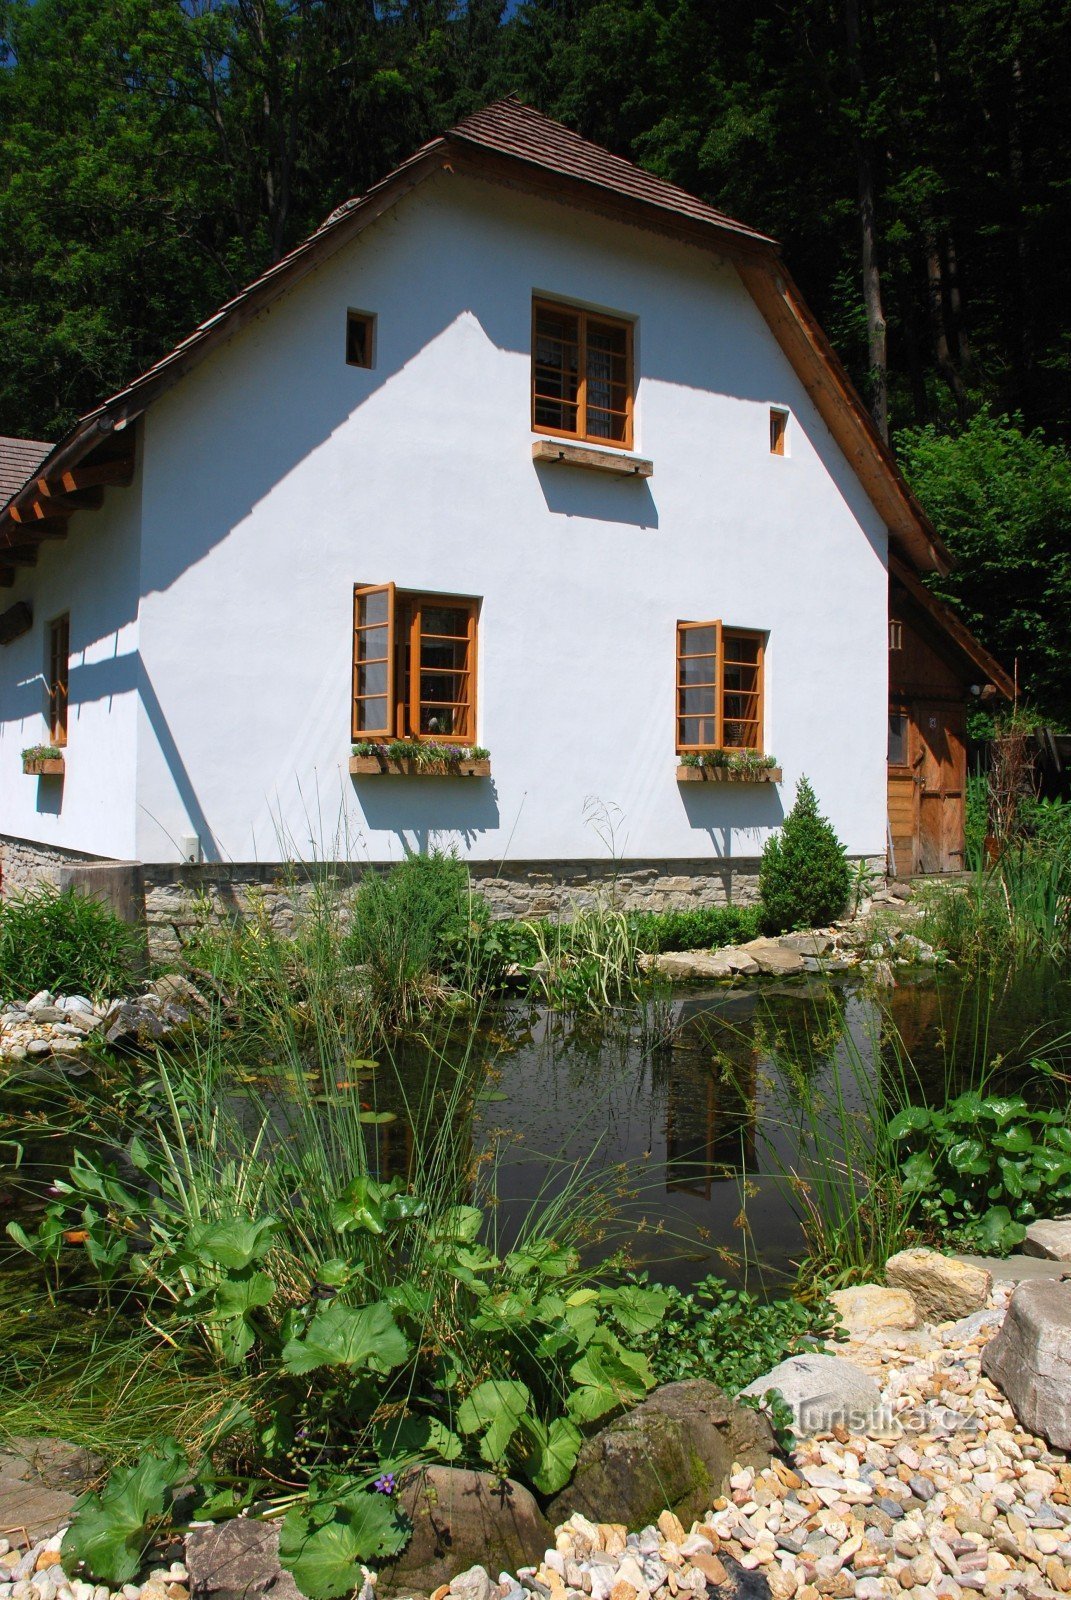 Šmiřák's mill in Kozlovice